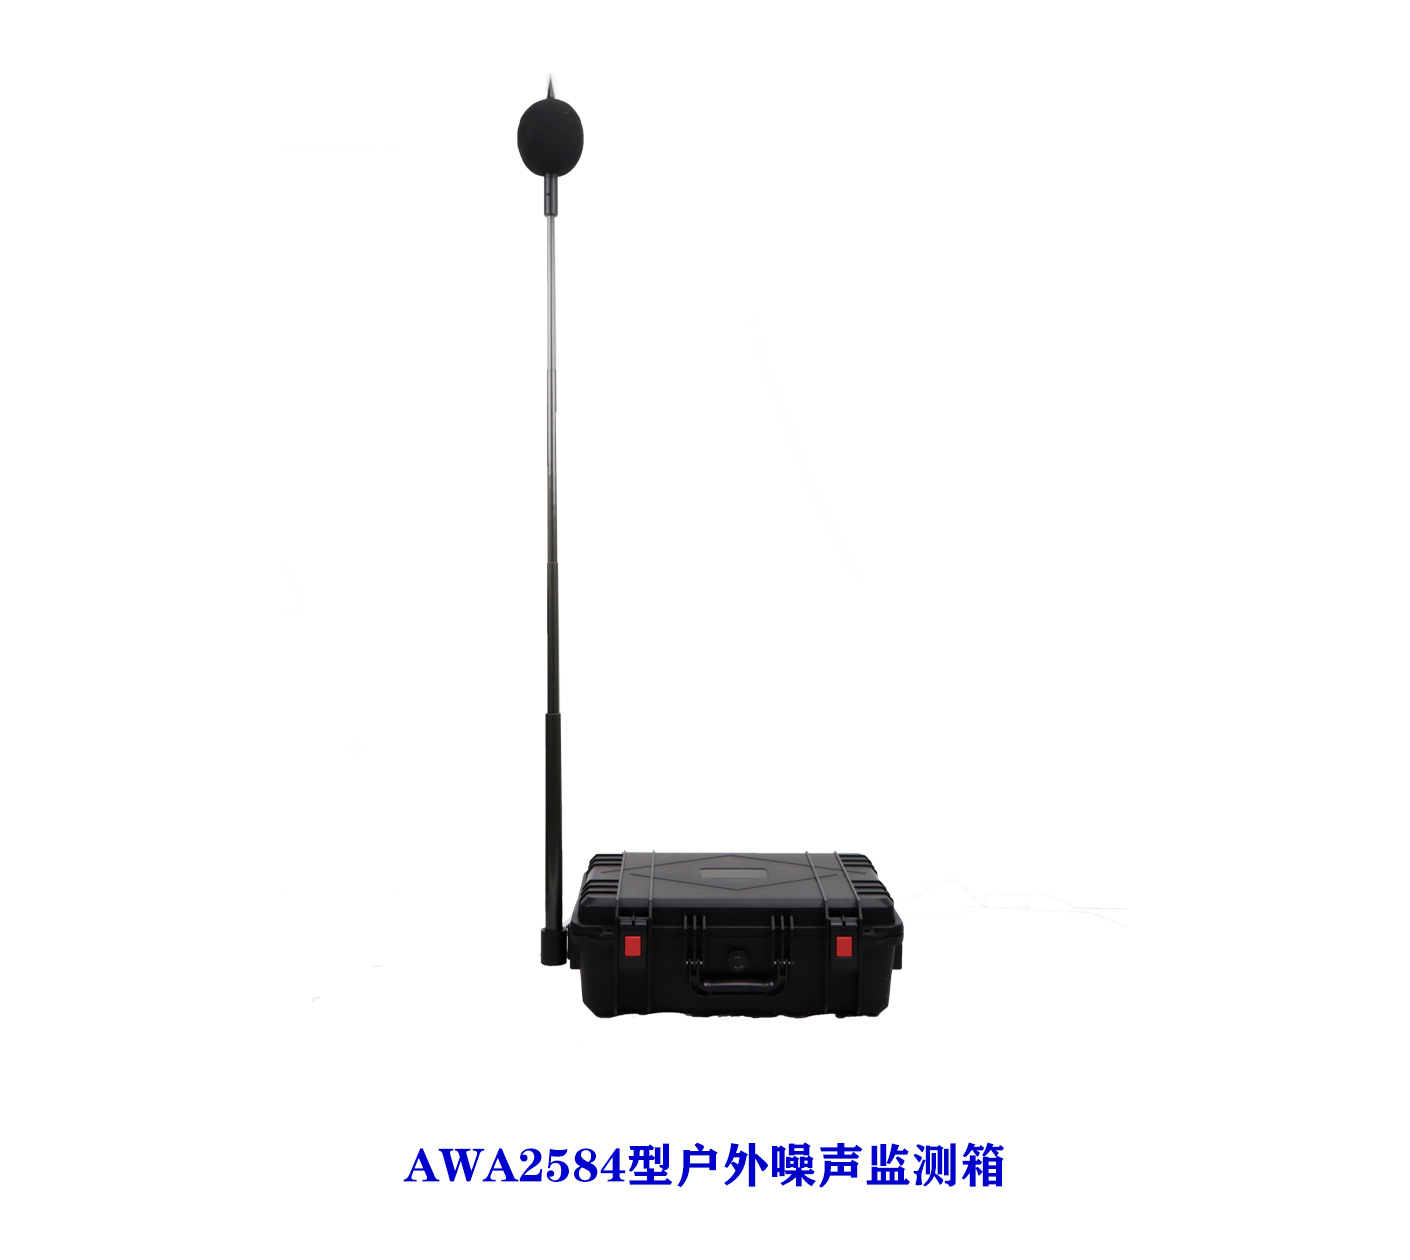 AWA2581/AWA2584型移动式环境噪声自动监测装置